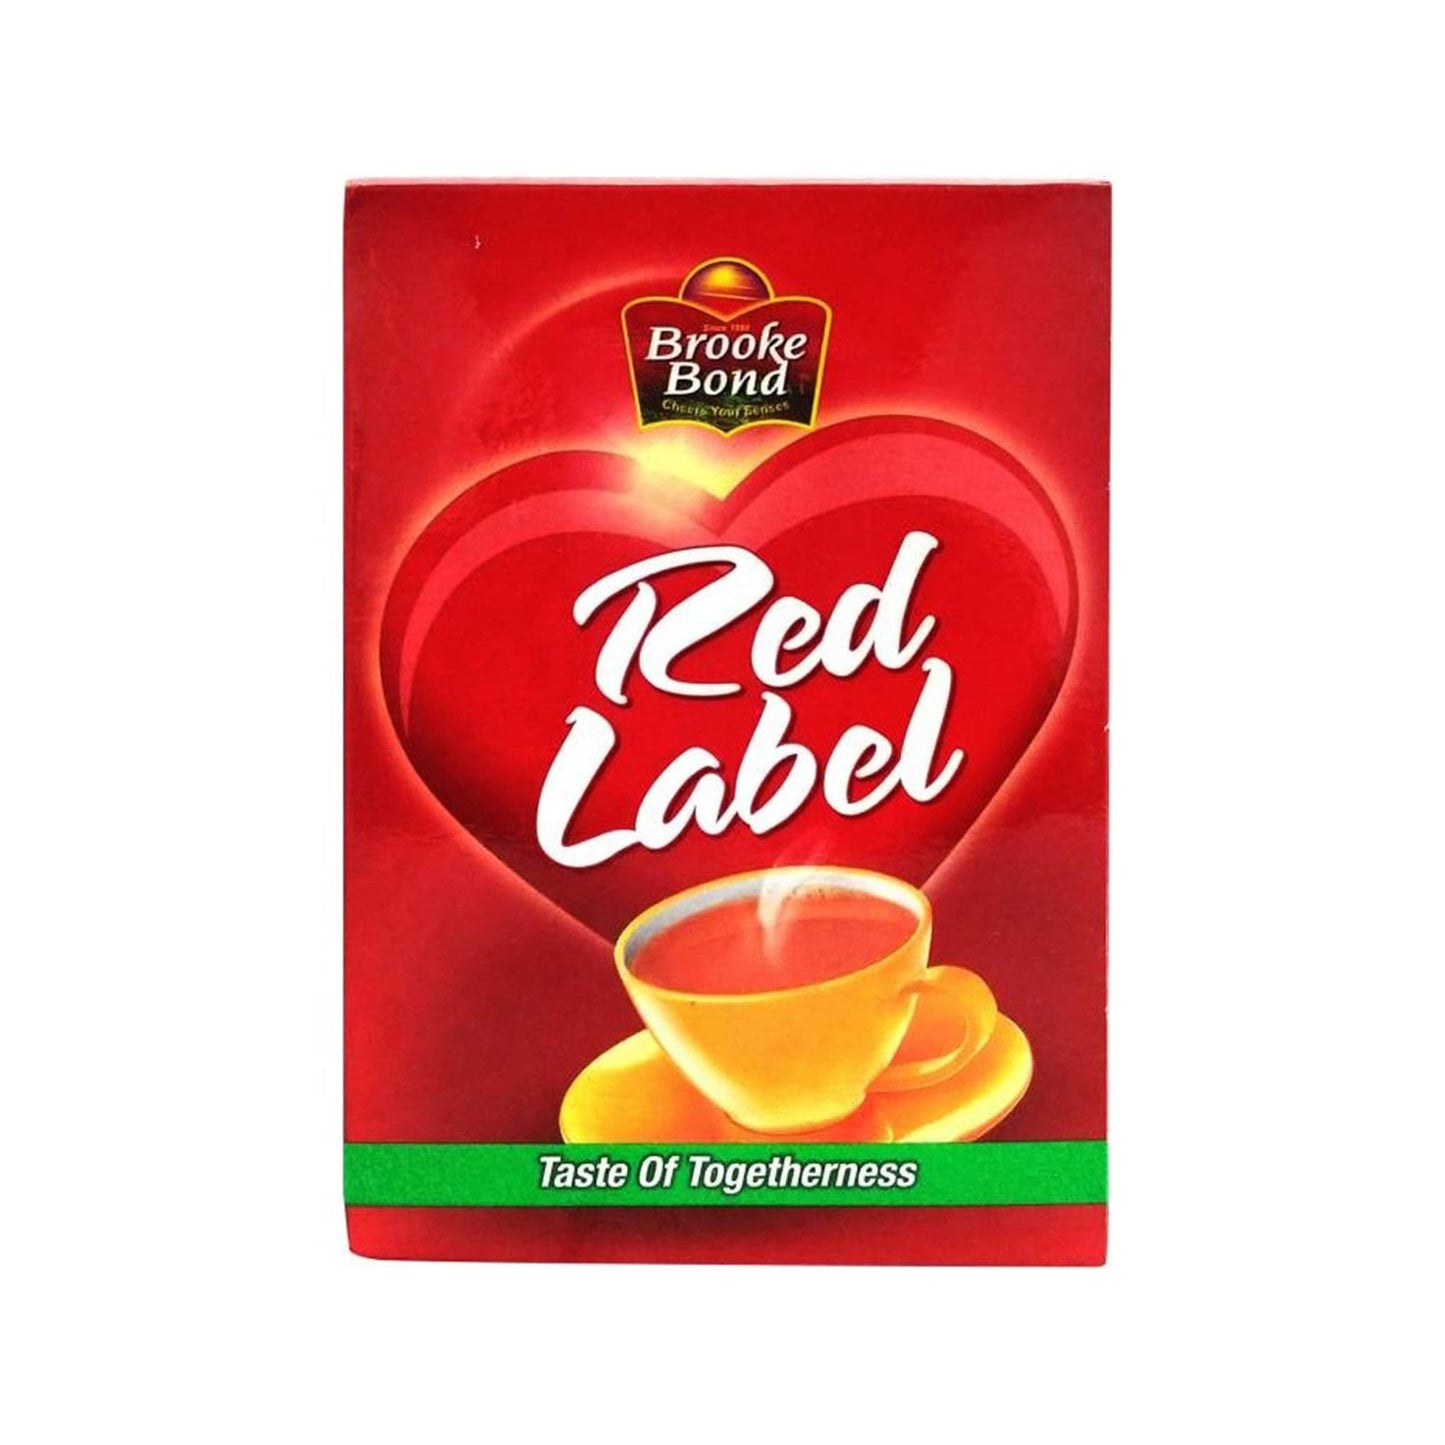 Red label tea.